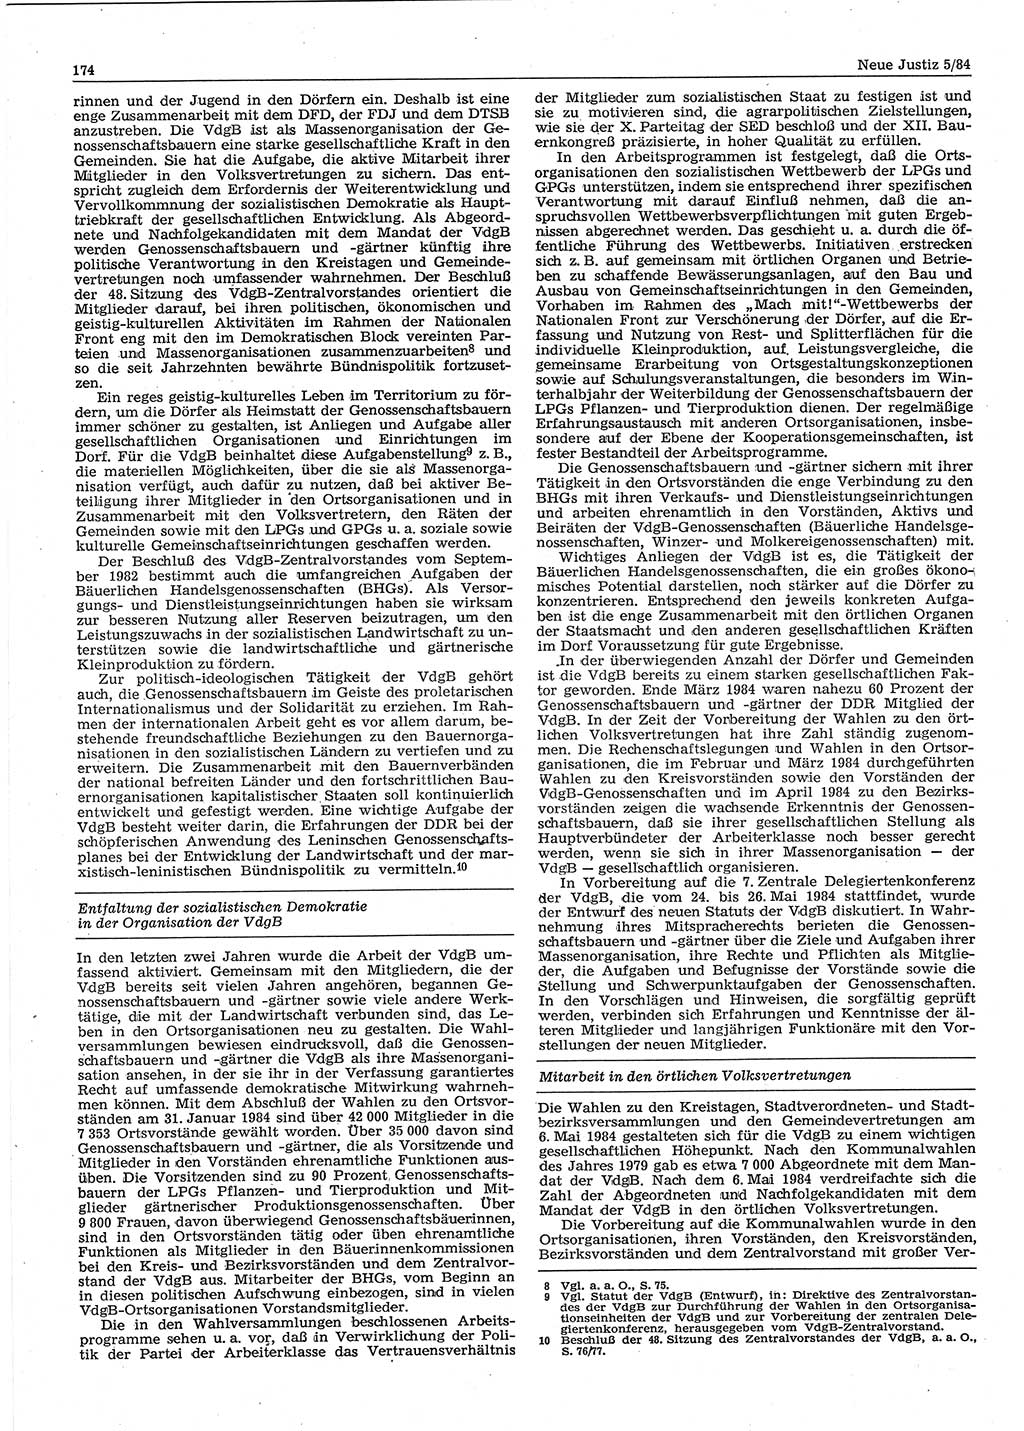 Neue Justiz (NJ), Zeitschrift für sozialistisches Recht und Gesetzlichkeit [Deutsche Demokratische Republik (DDR)], 38. Jahrgang 1984, Seite 174 (NJ DDR 1984, S. 174)